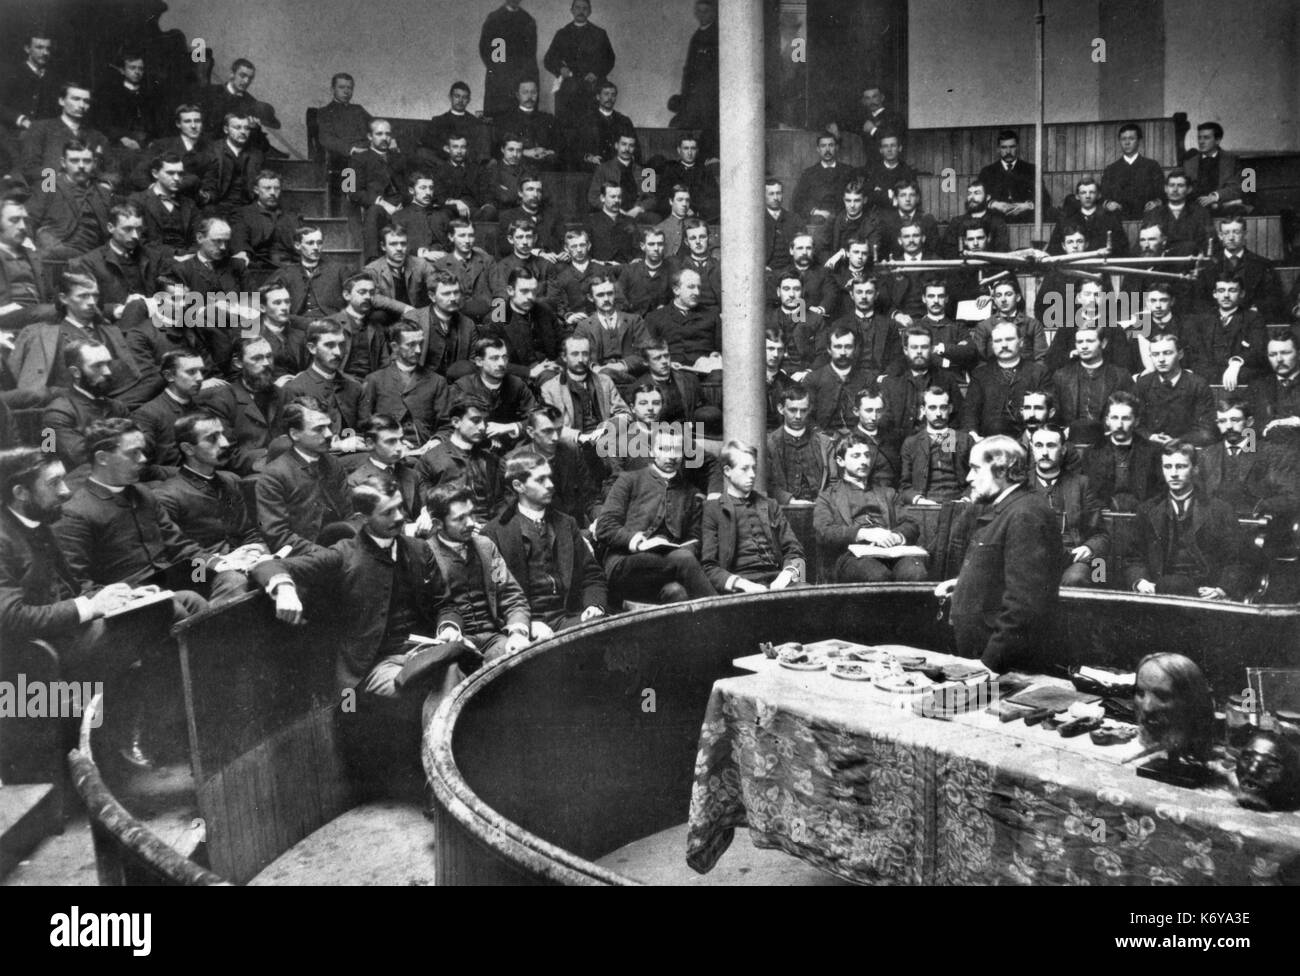 Vortrag an der Universität von Pennsylvania Schule von Medizin im Jahre 1888, als die Schule war bereits 123 Jahre alt. Philadelphia, Pennsylvania, 1888. Stockfoto